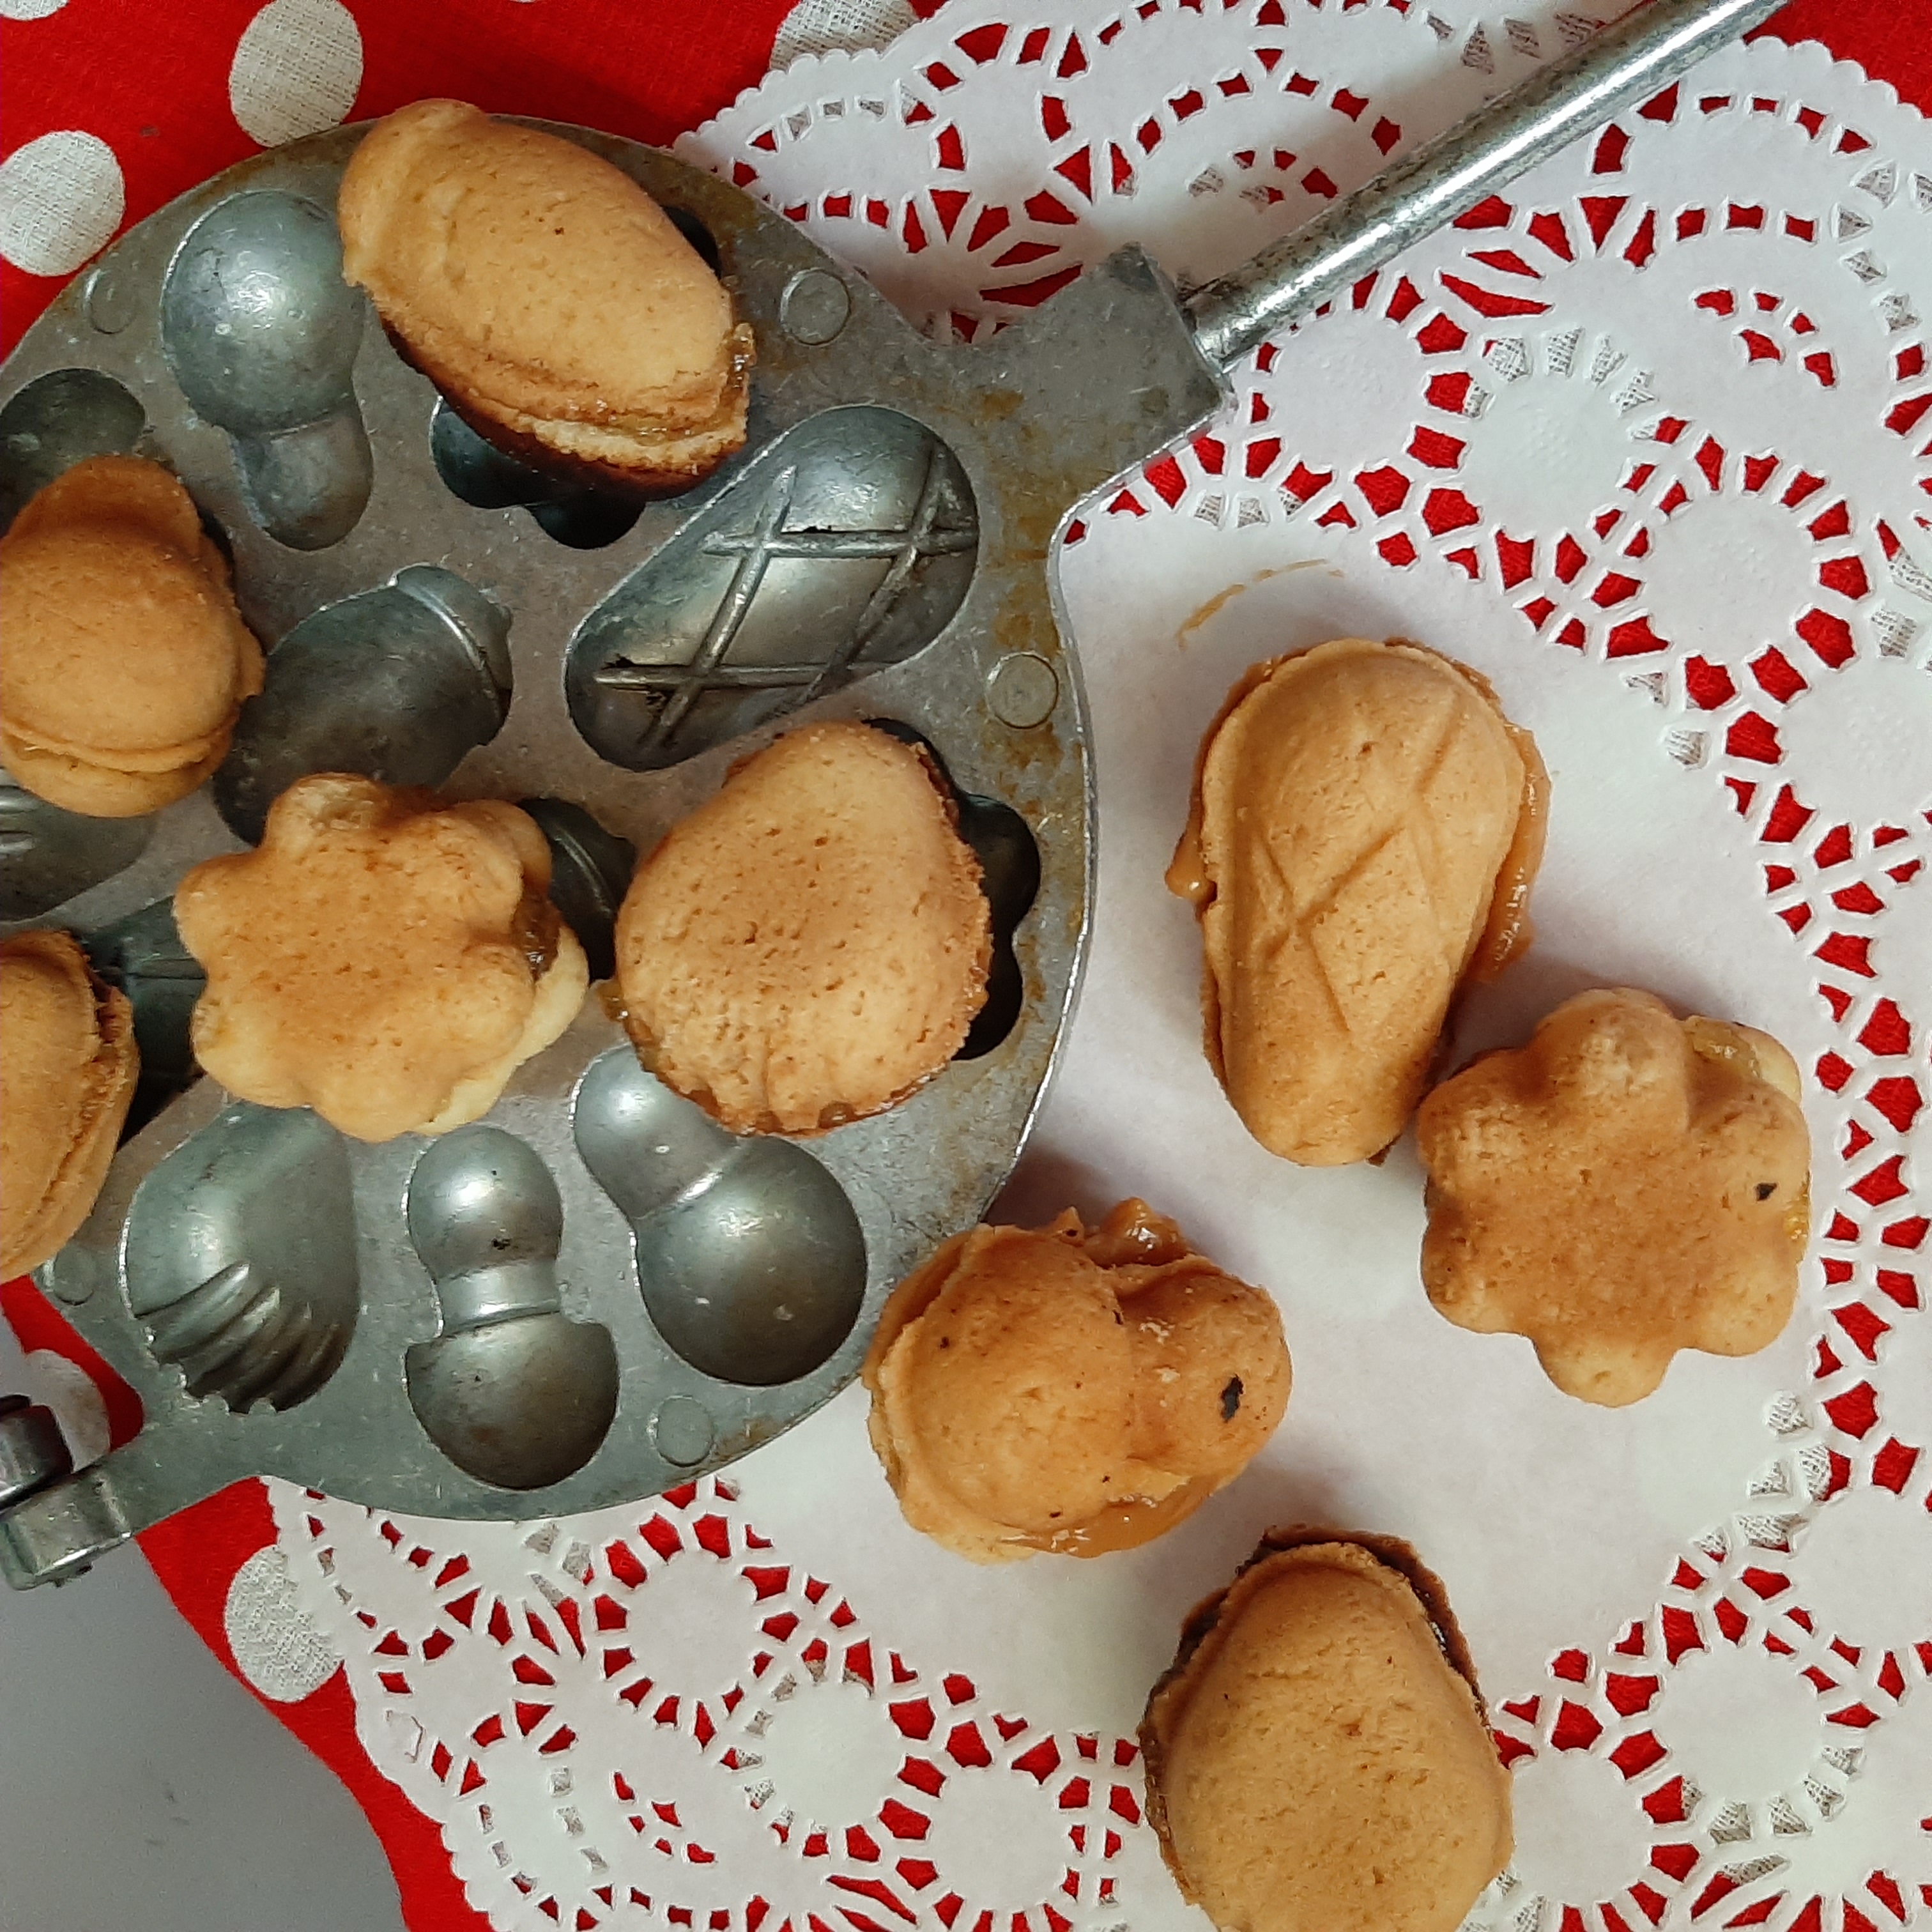 Как приготовить печенье «Орешки»: 6 простых рецептов + советы кондитера